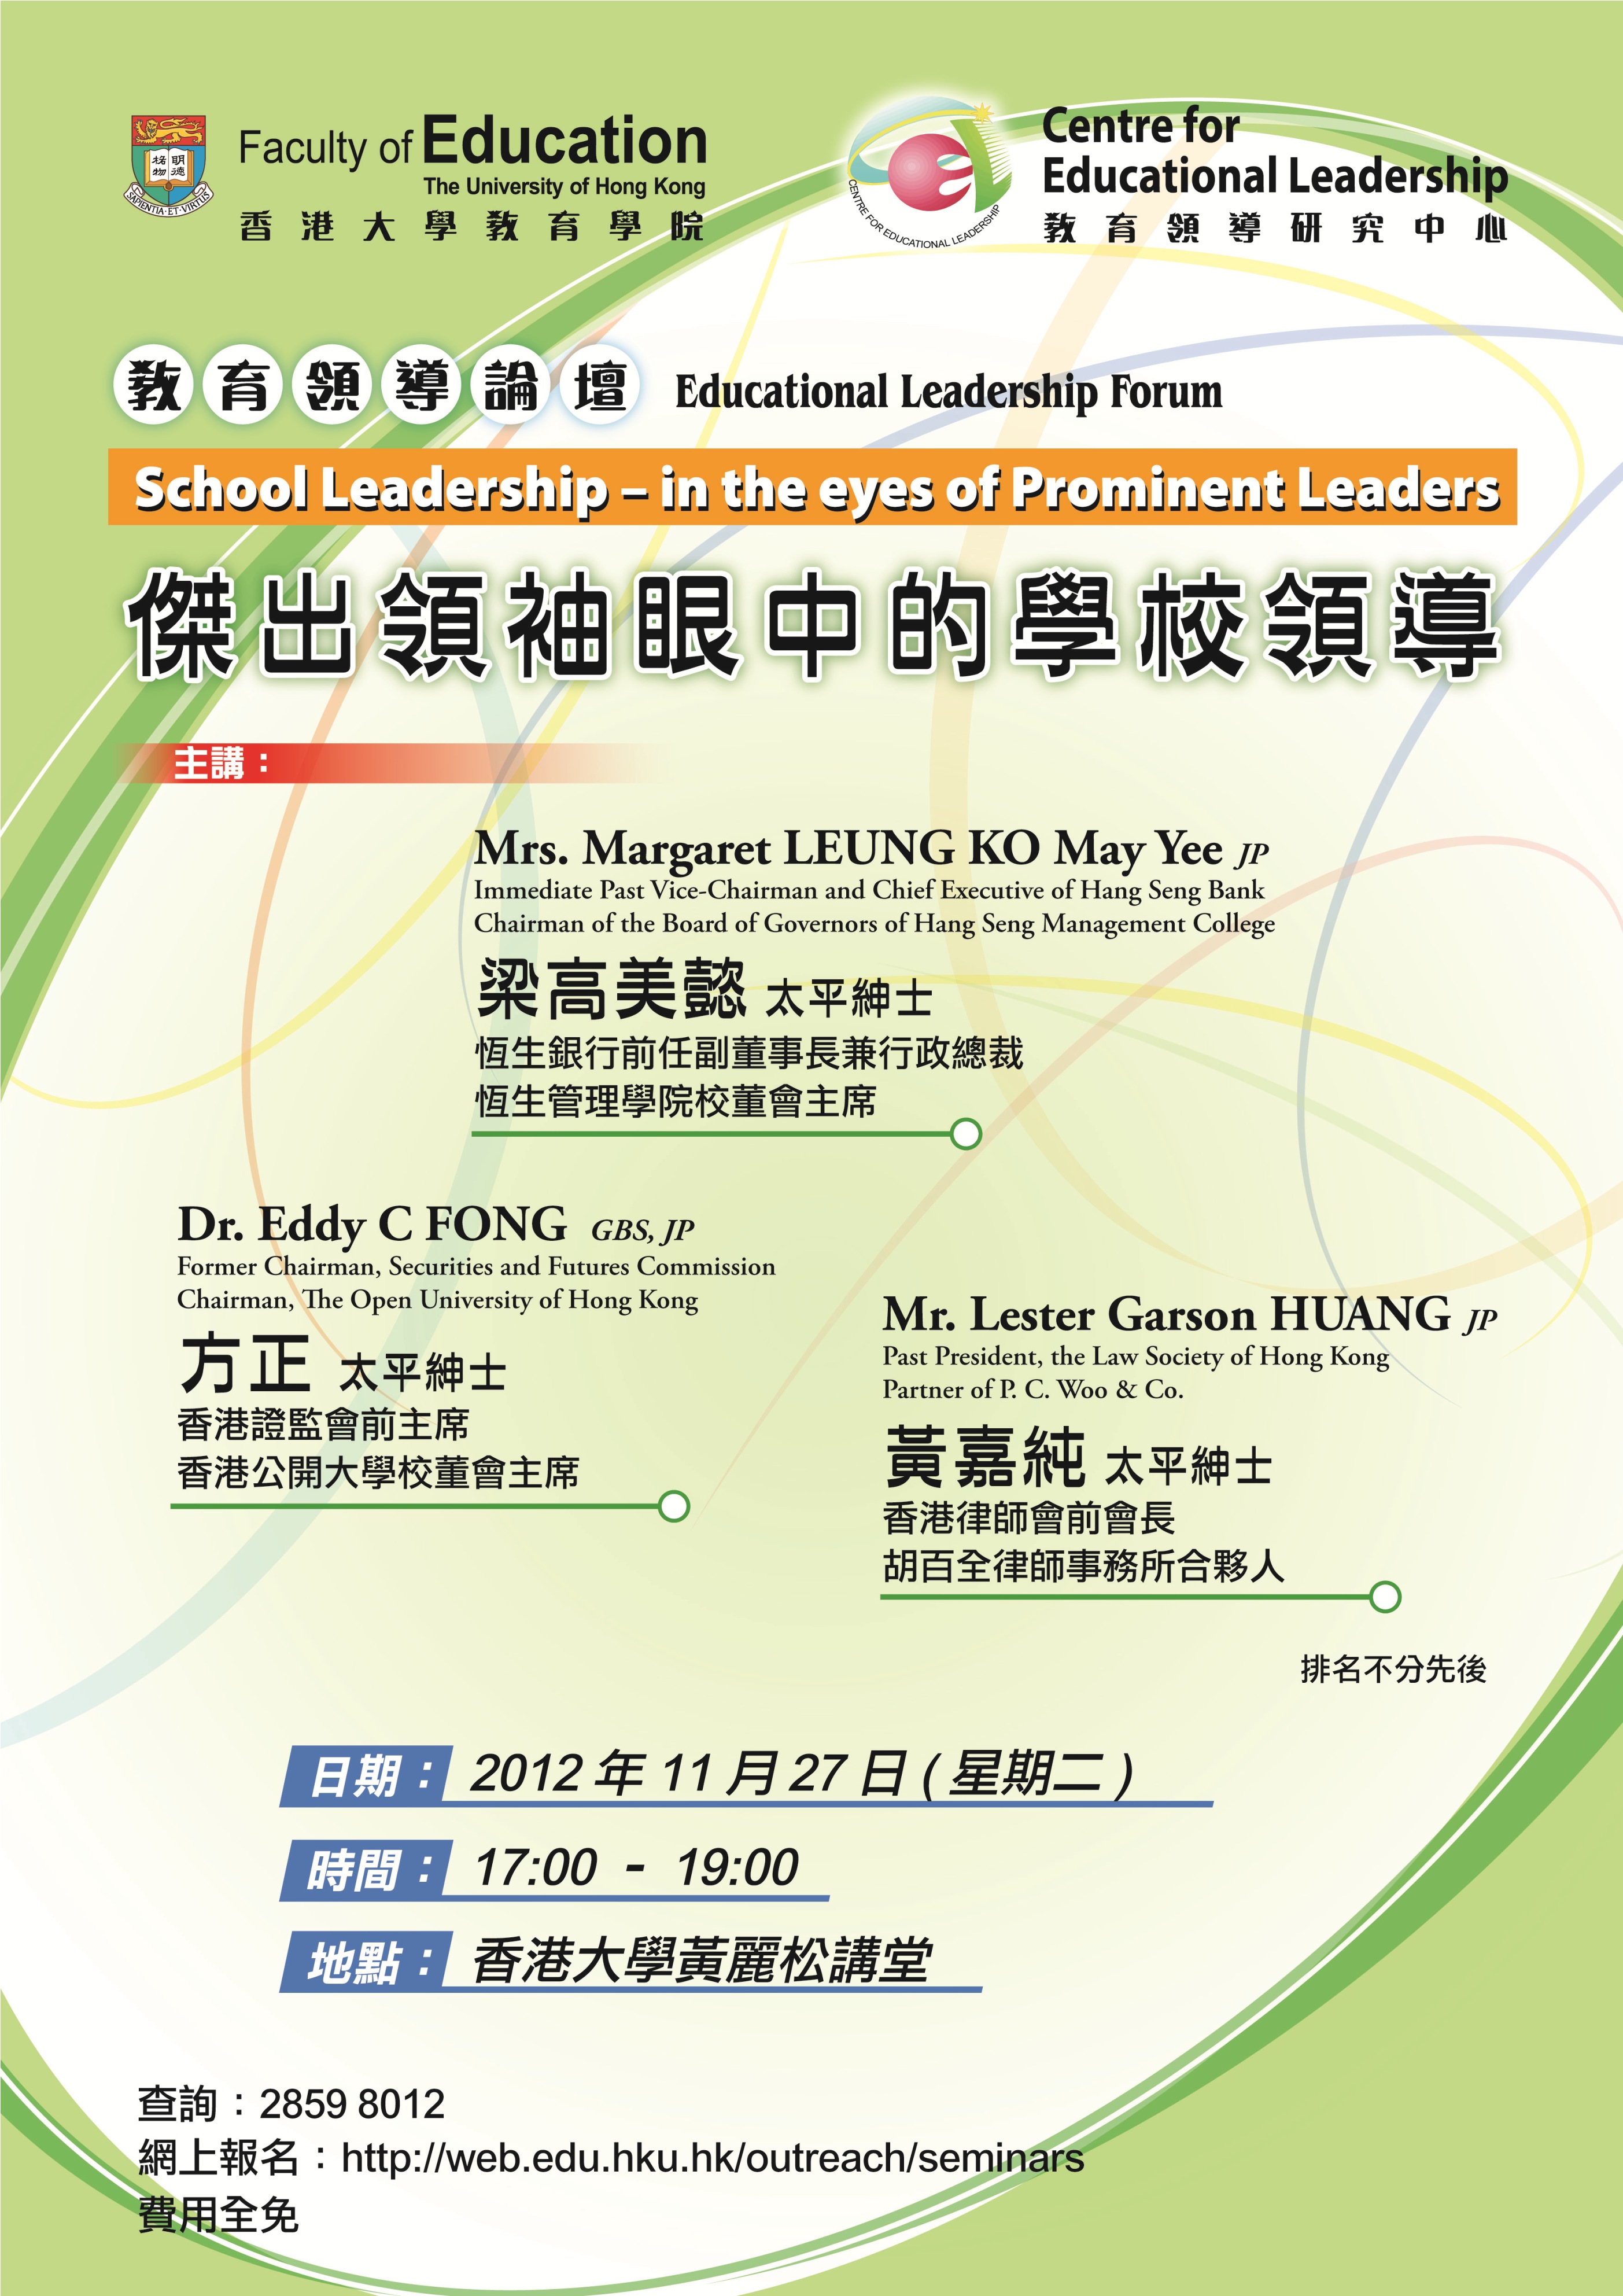 Educational Leadership Forum entitled School Leadership – in the eyes of Prominent Leaders